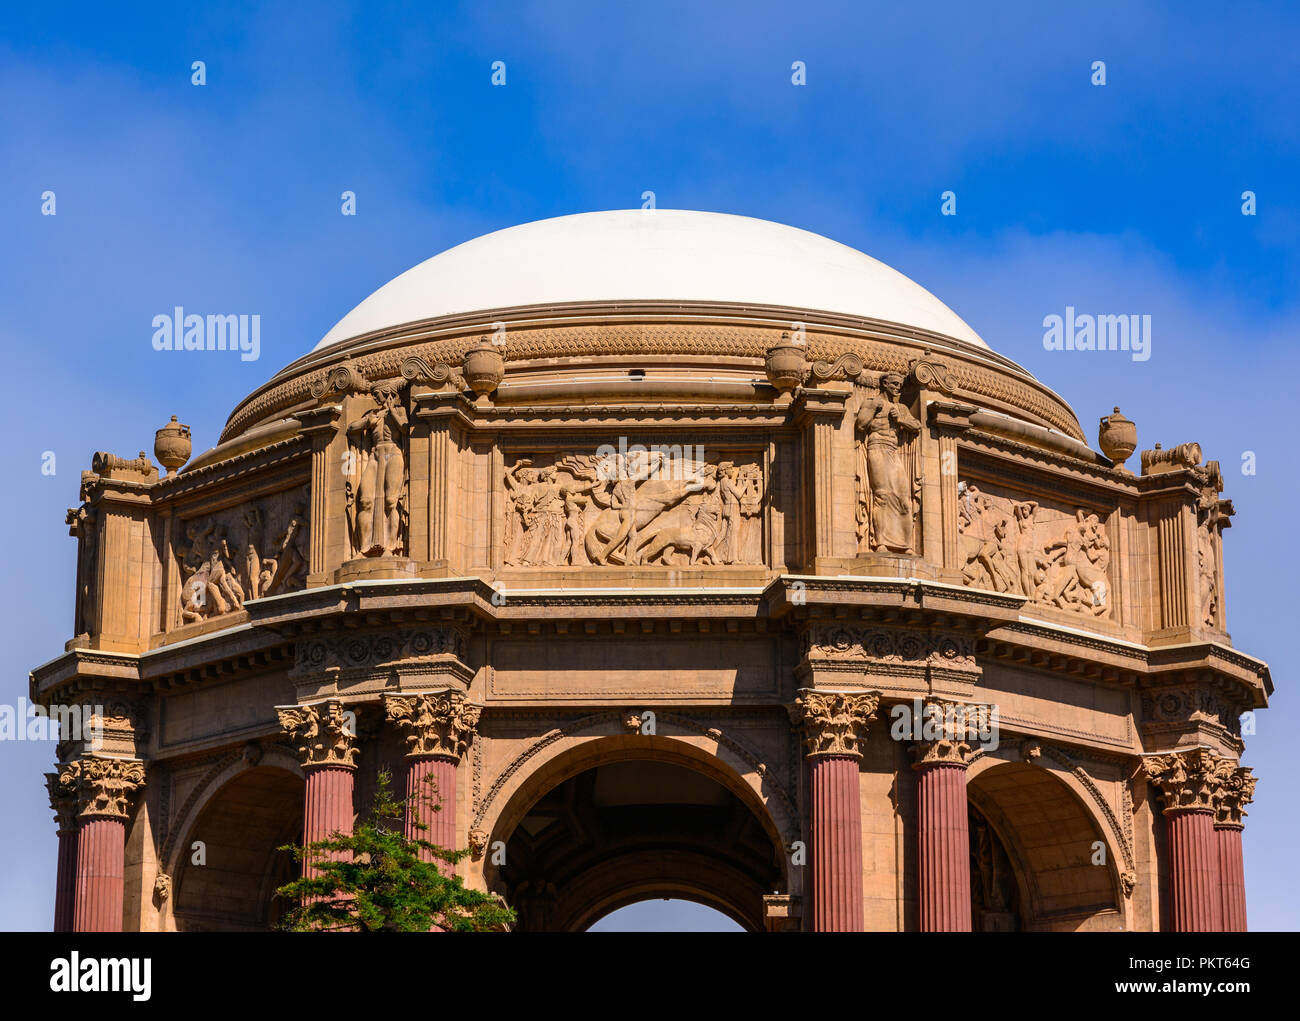 La parte superior de la gran cúpula blanca del Palacio de Bellas Artes en San Francisco. Foto de stock